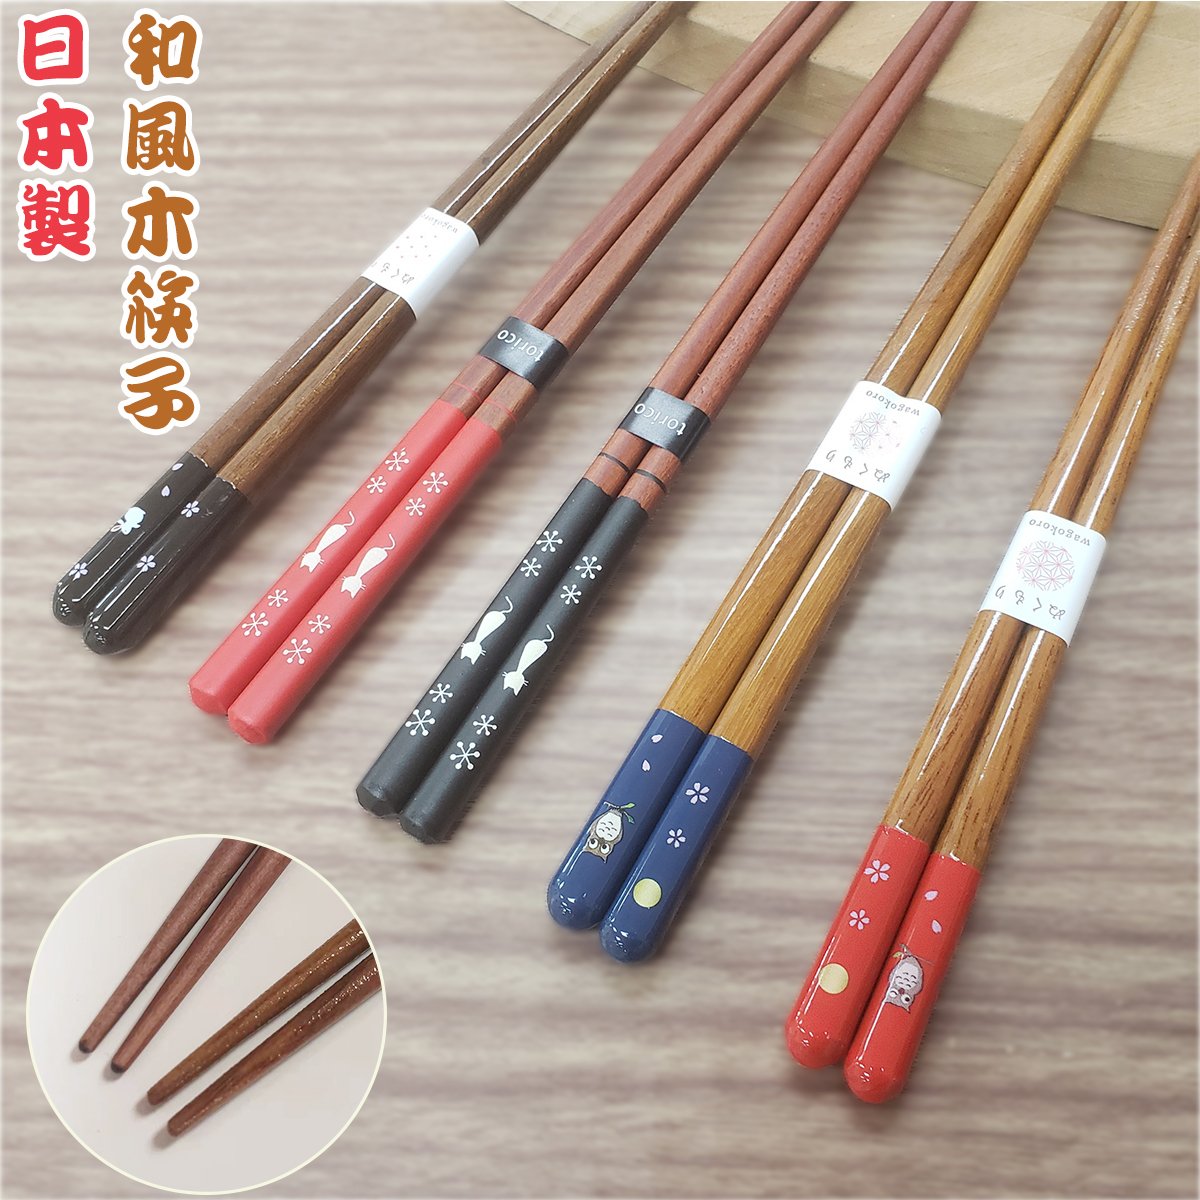 Chopsticks - Sakura Rabbit (Made in Japan)